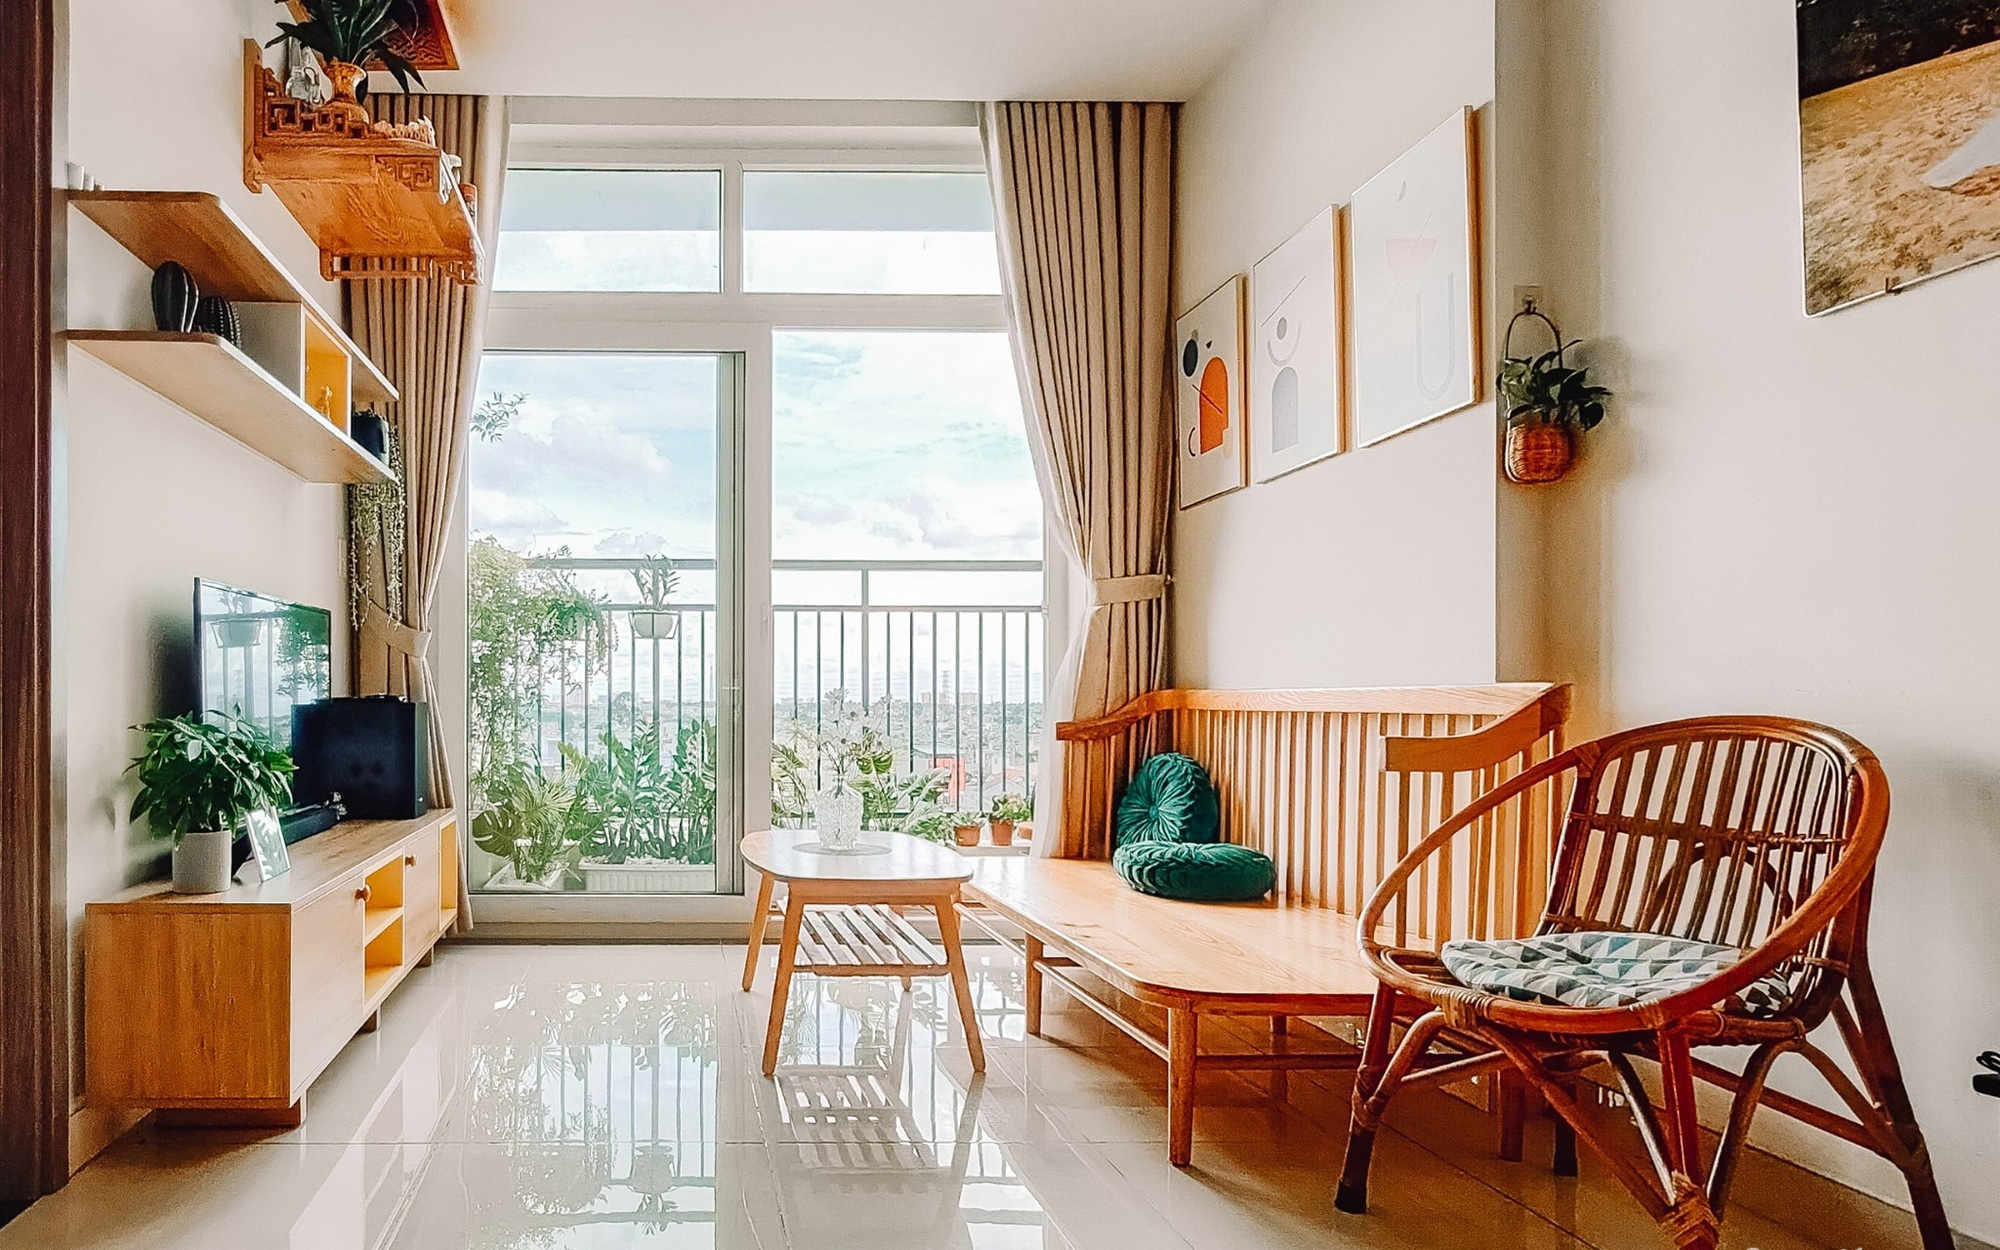 Căn hộ 60m² tràn ngập màu nắng, tinh tế đến từng góc nhỏ của vợ chồng ngành Y ở Sài Gòn